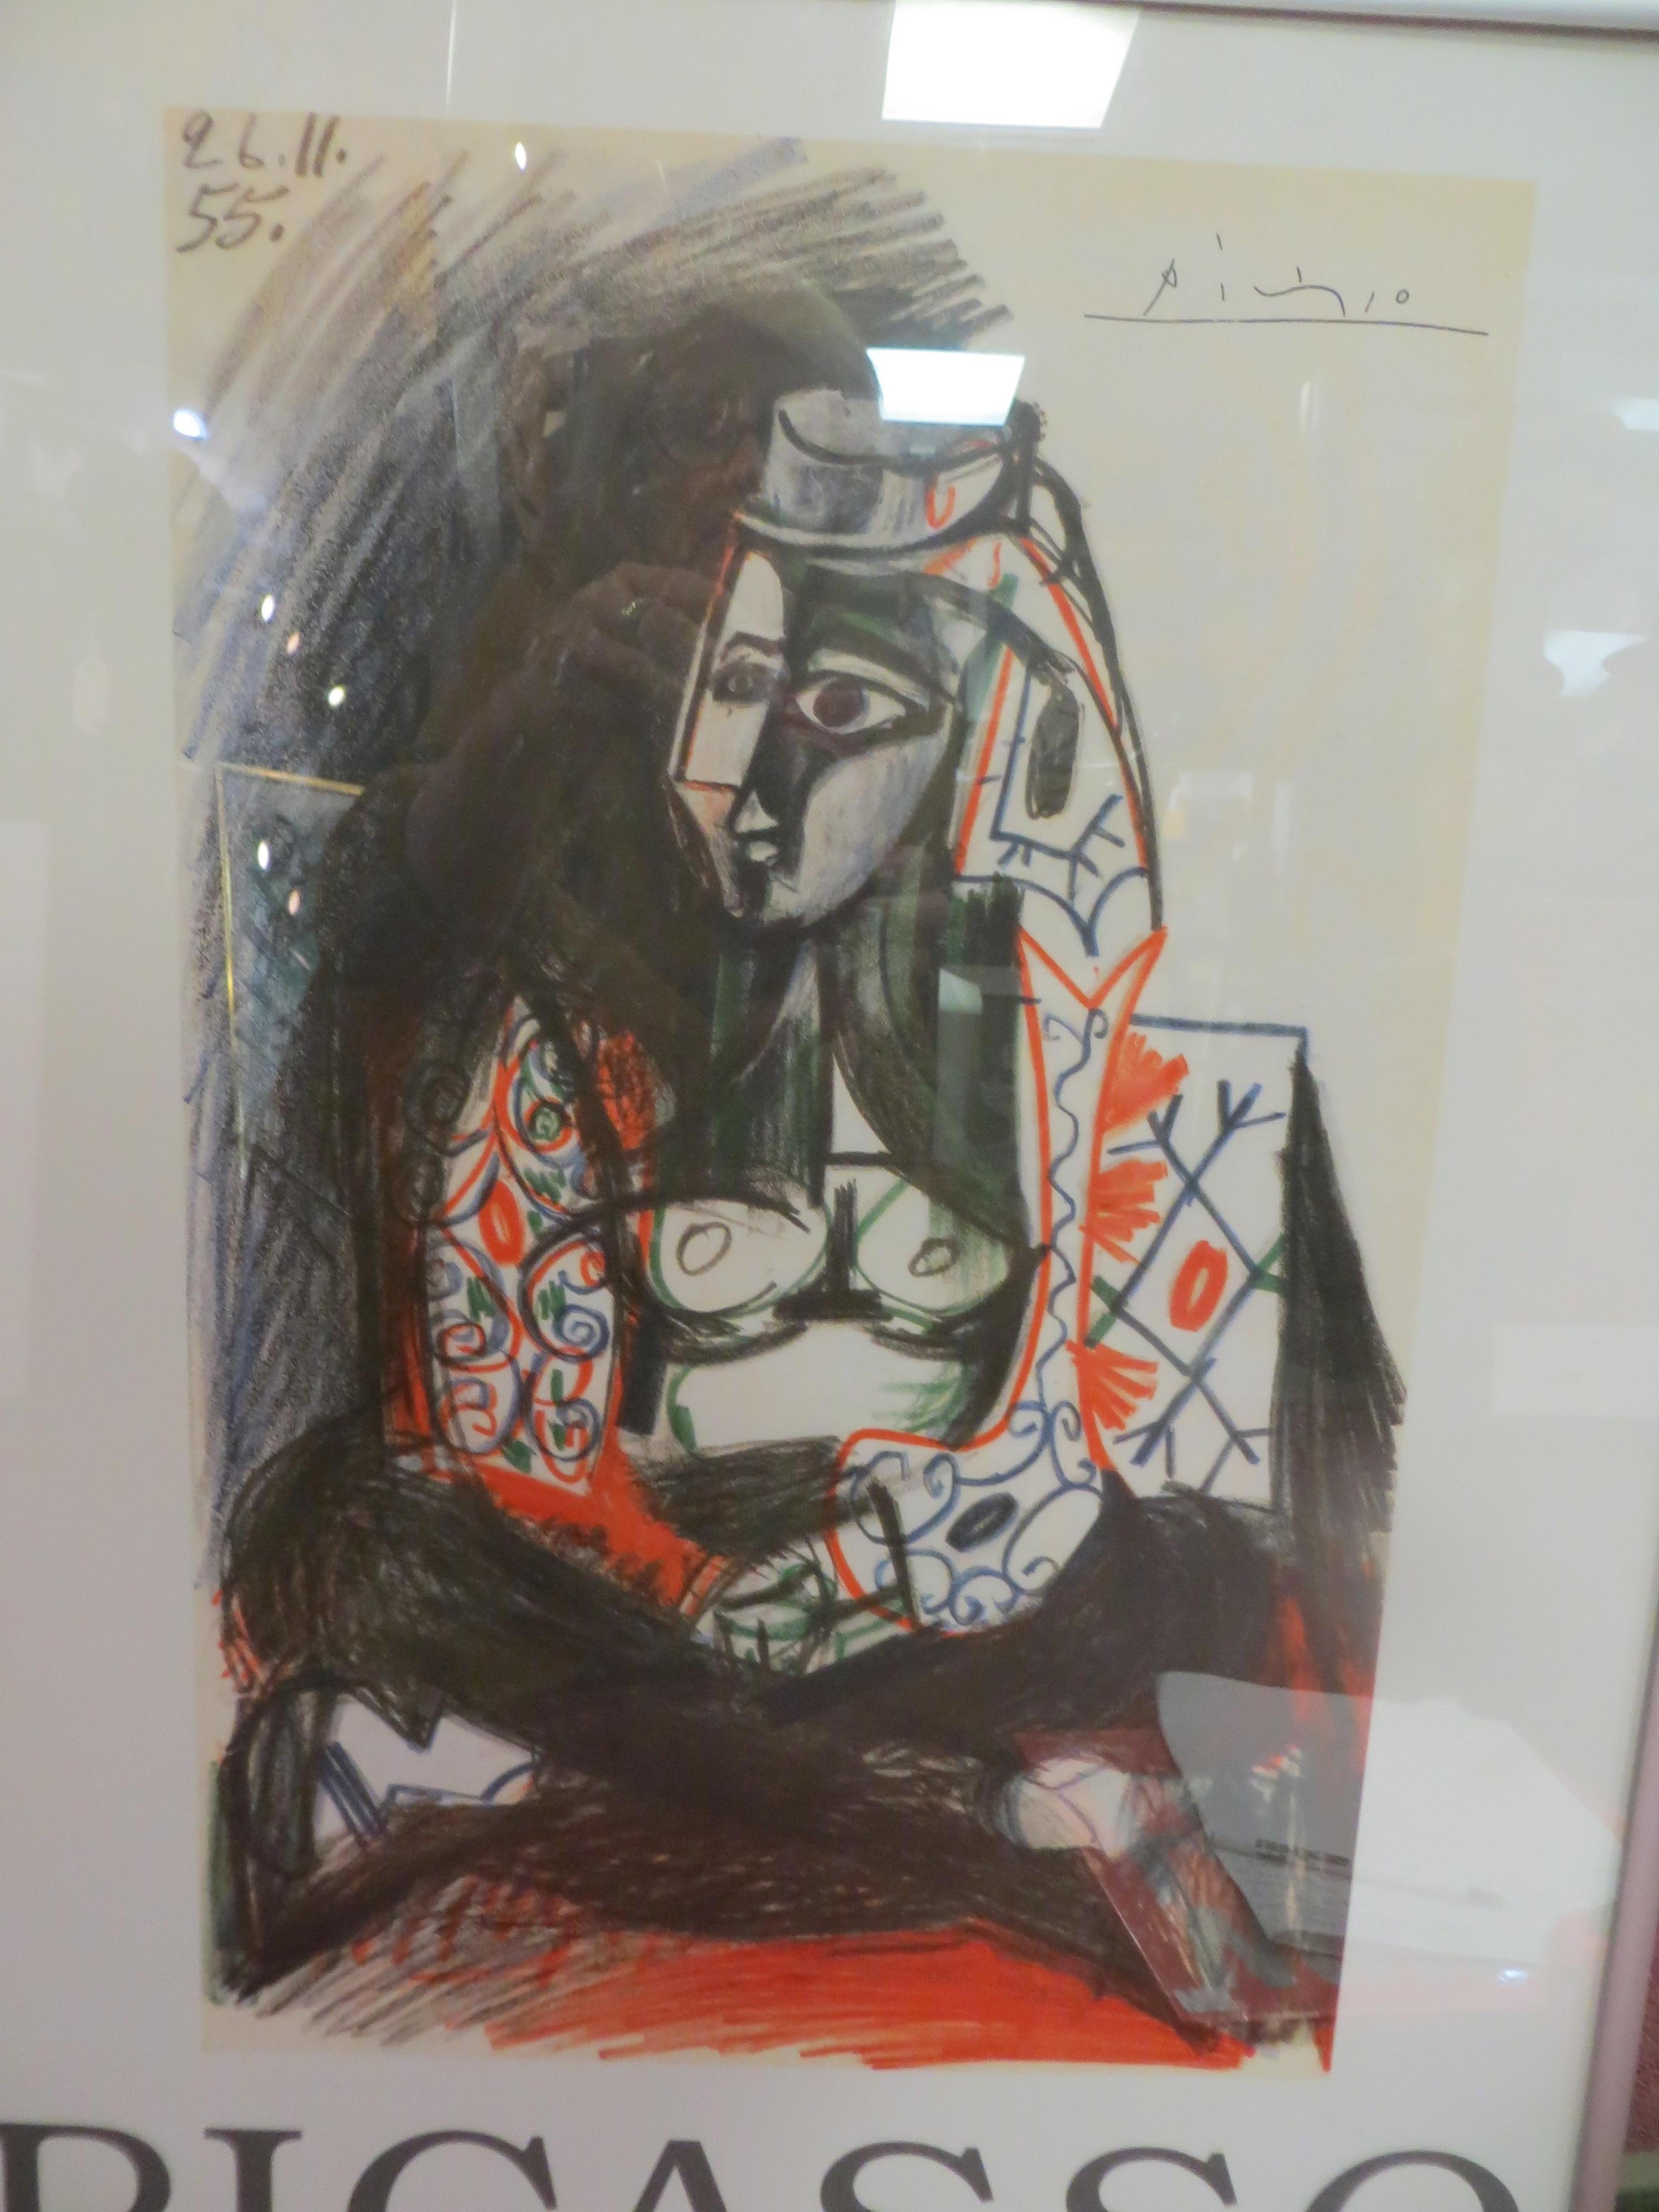 Carnet de la Californie Poster Exhibition   After Picasso - Beige Figurative Print by Pablo Picasso